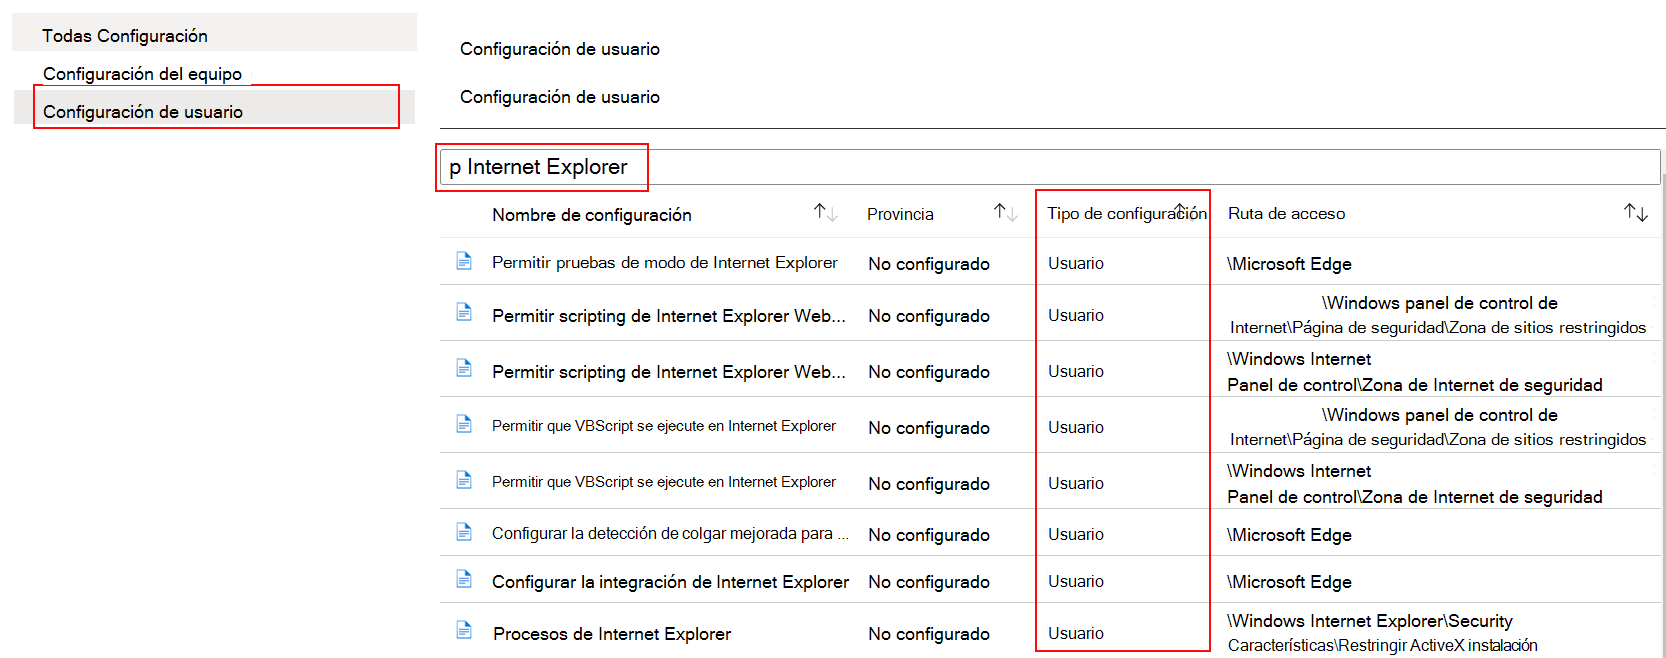 En la plantilla ADMX, seleccione Configuración del usuario y busque o filtre por Internet Explorer en Microsoft Intune.